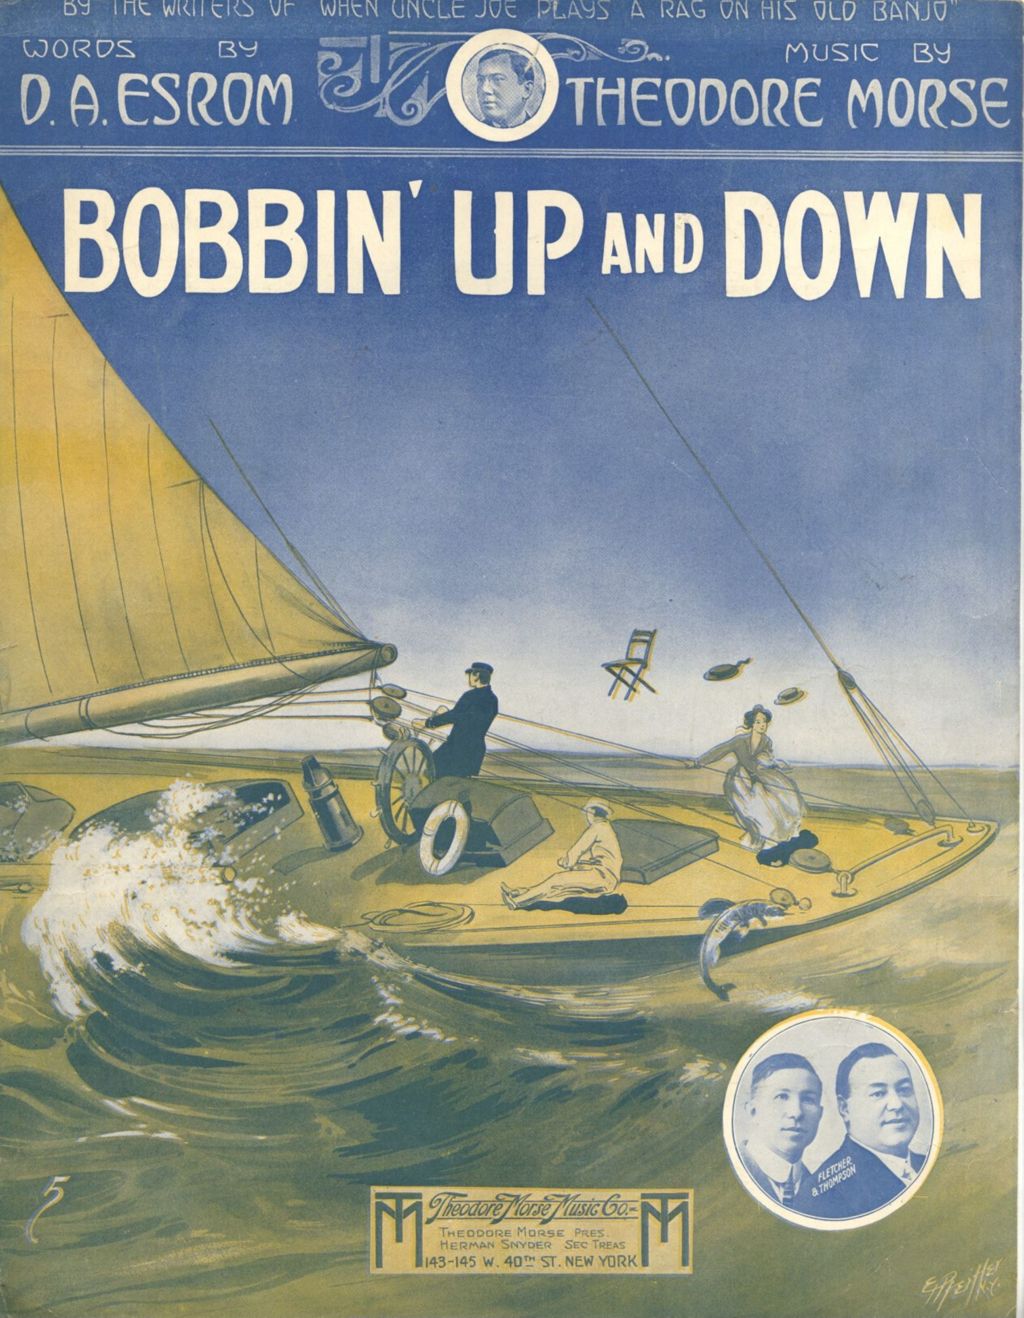 Bobbin' Up and Down